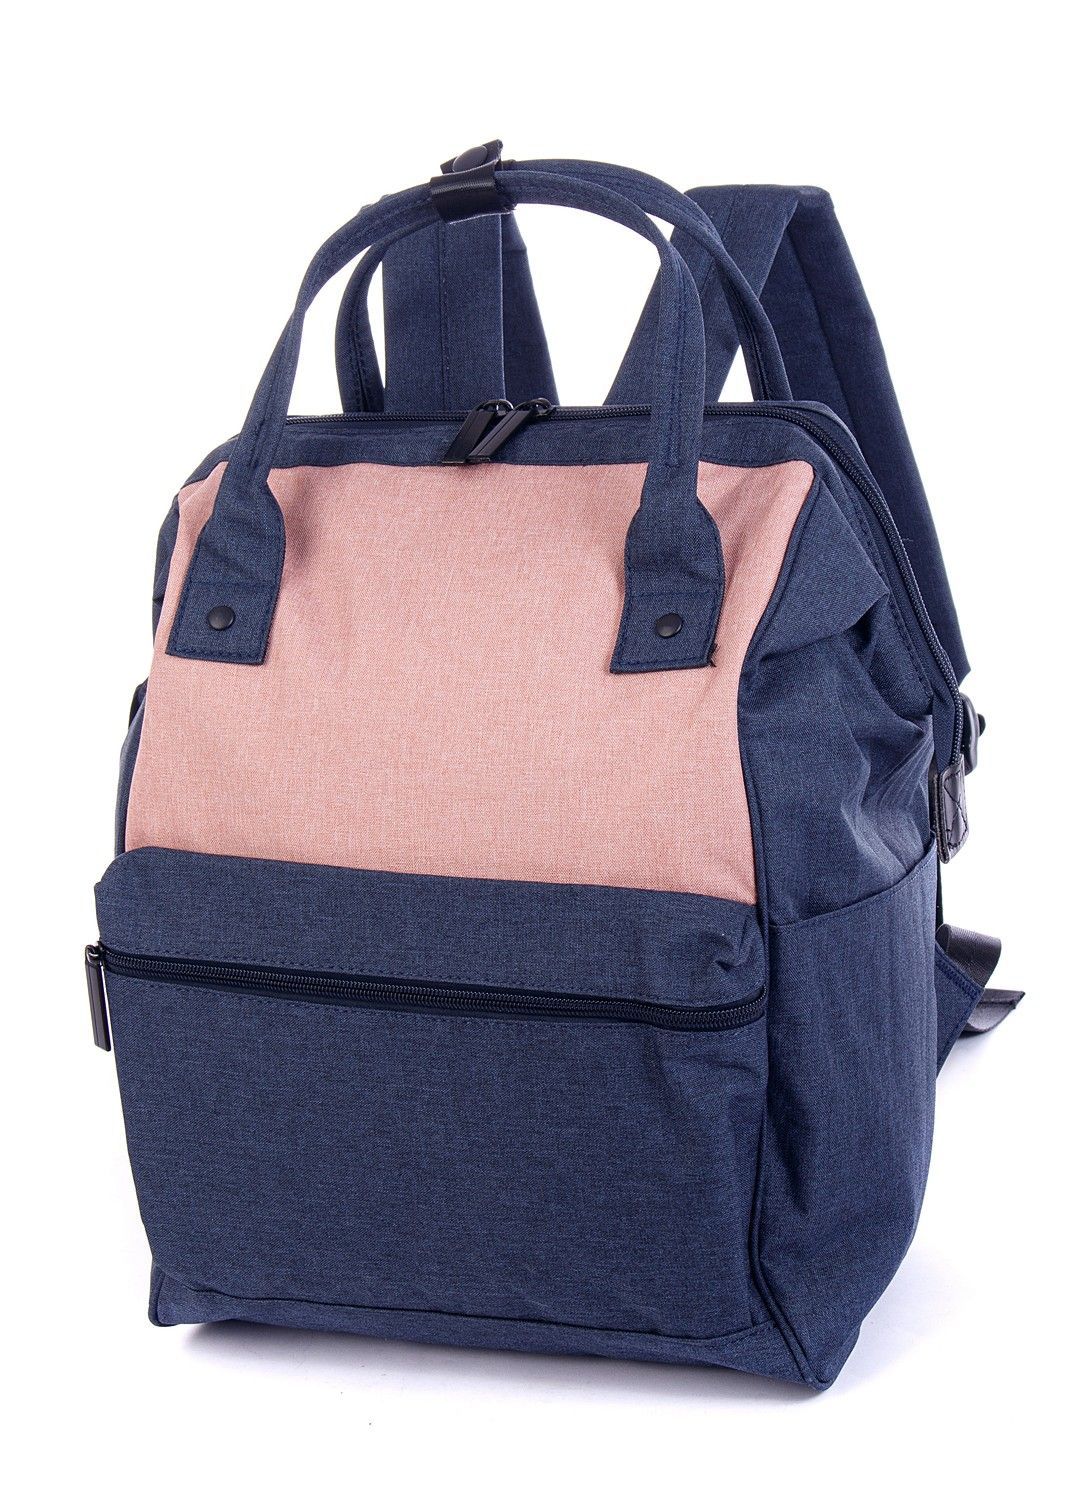 Рюкзак женский городской, темно-синий однотонный, со стандартными лямками, объем 18 л